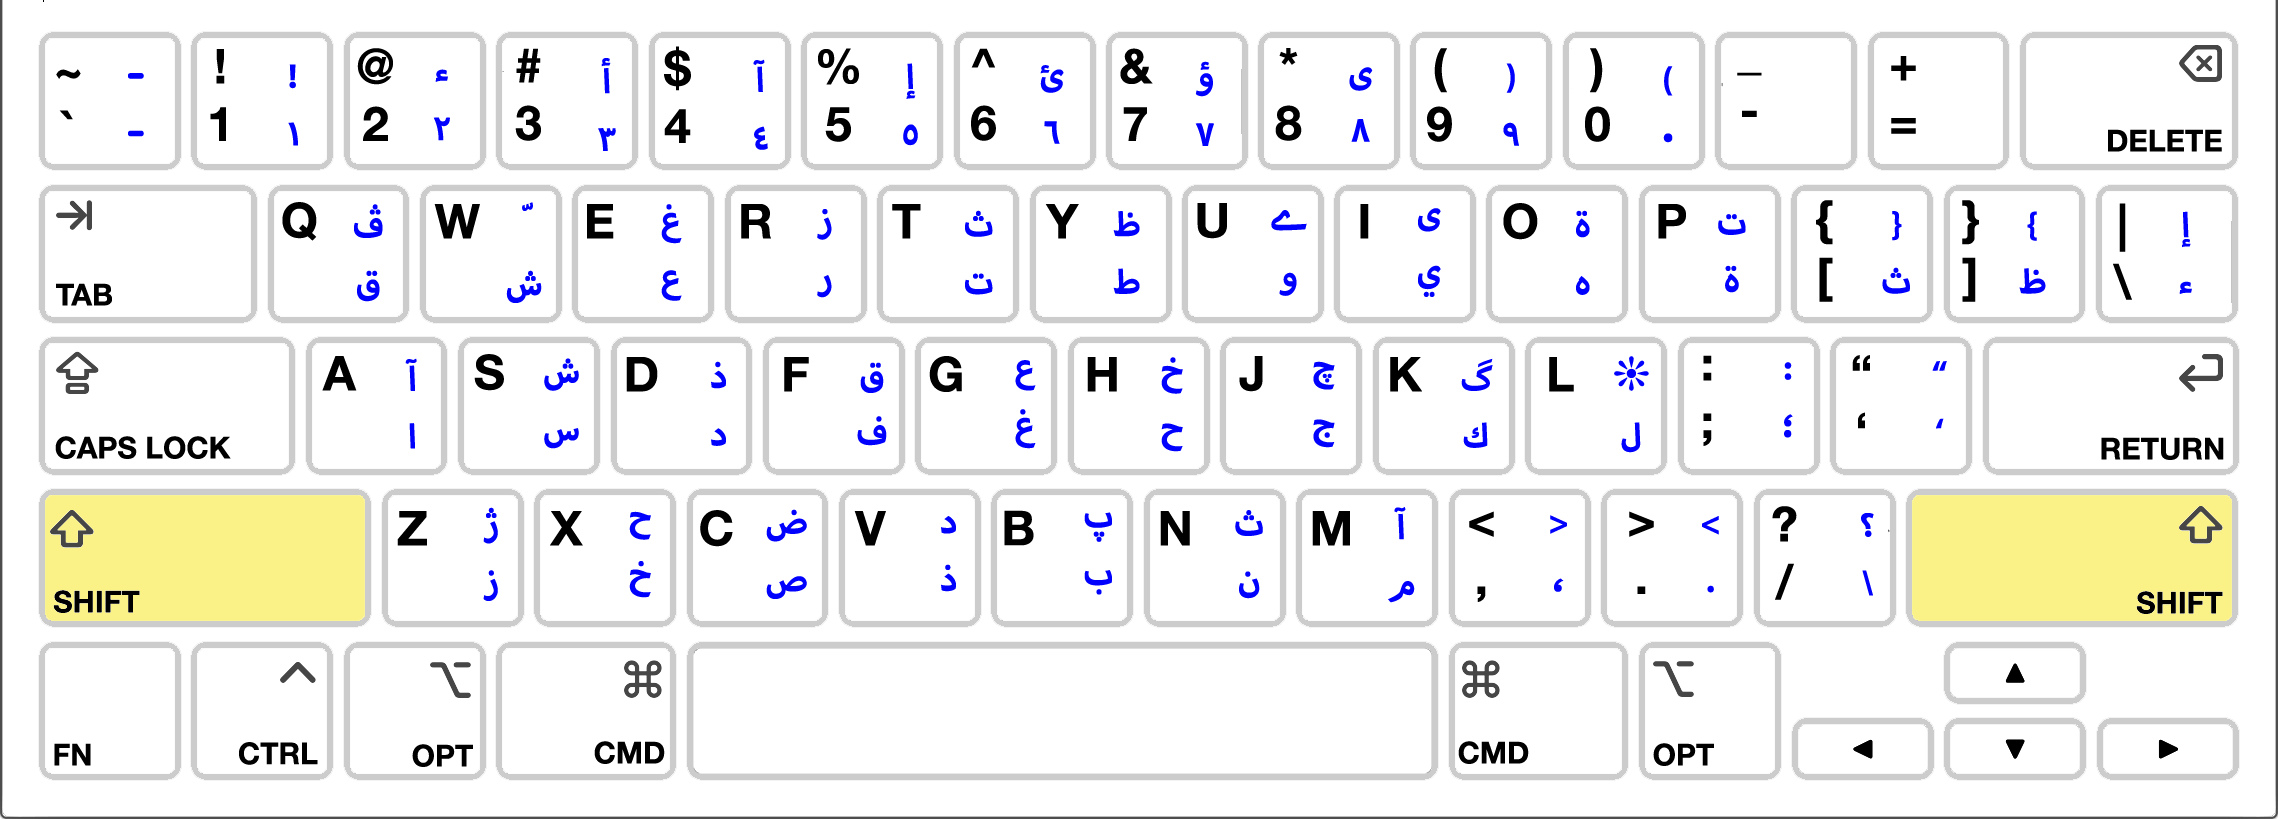 Arabic Base Keyboard Layout